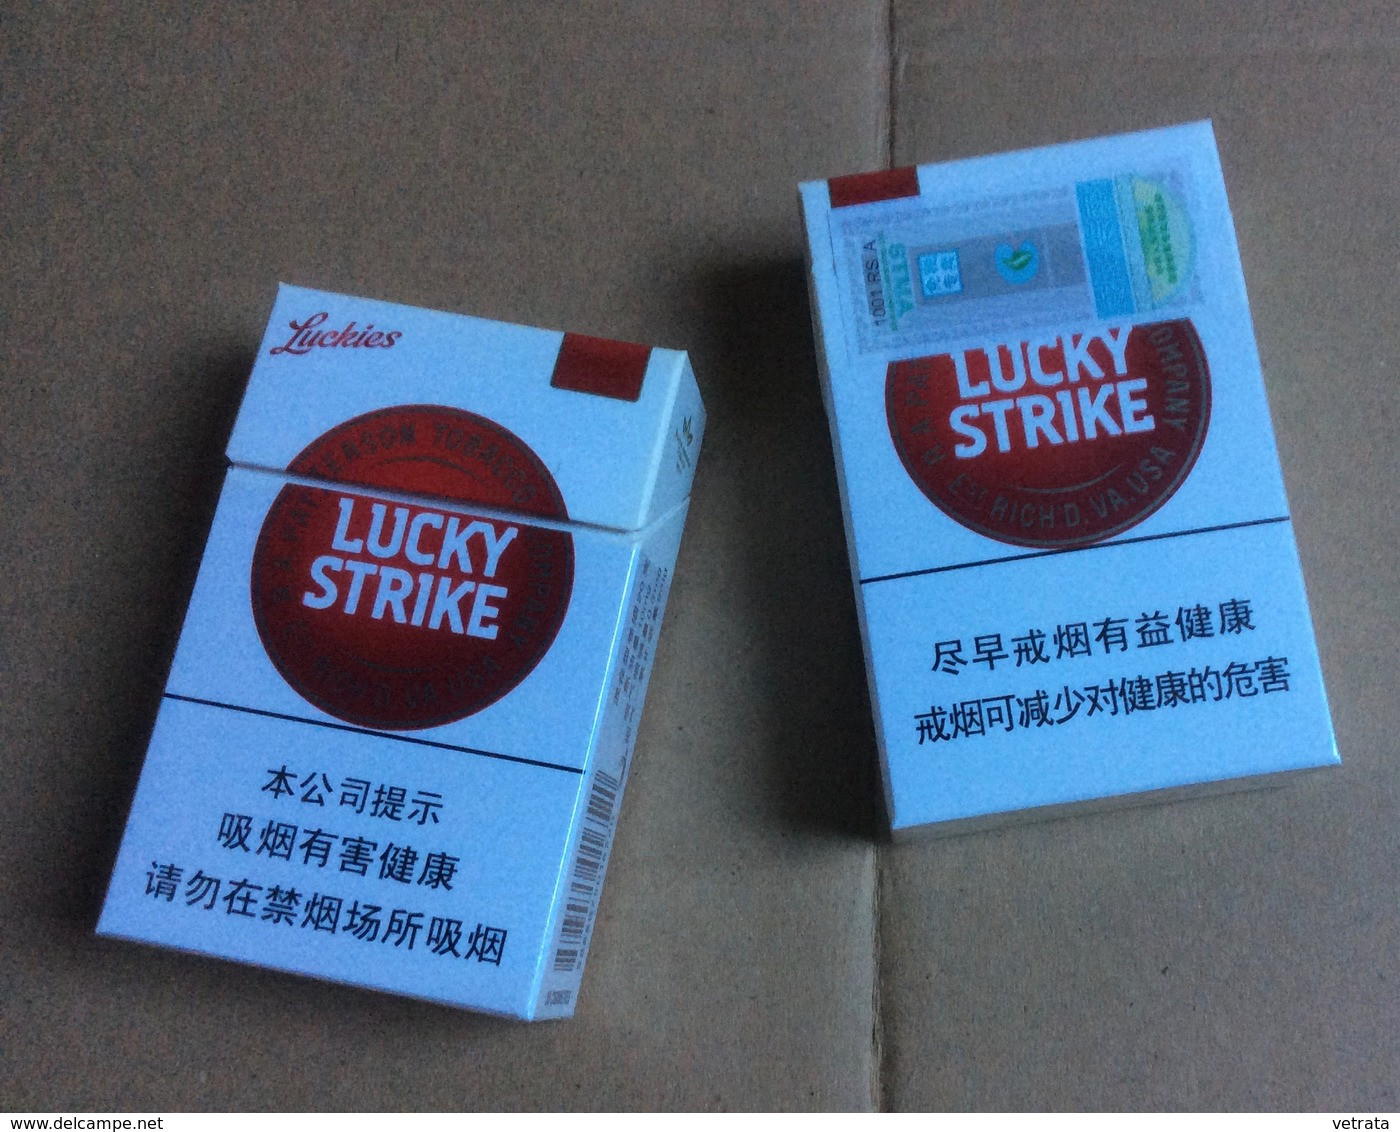 Empty Tobacco boxes - Boite (Vide) de cigarettes Lucky Strike